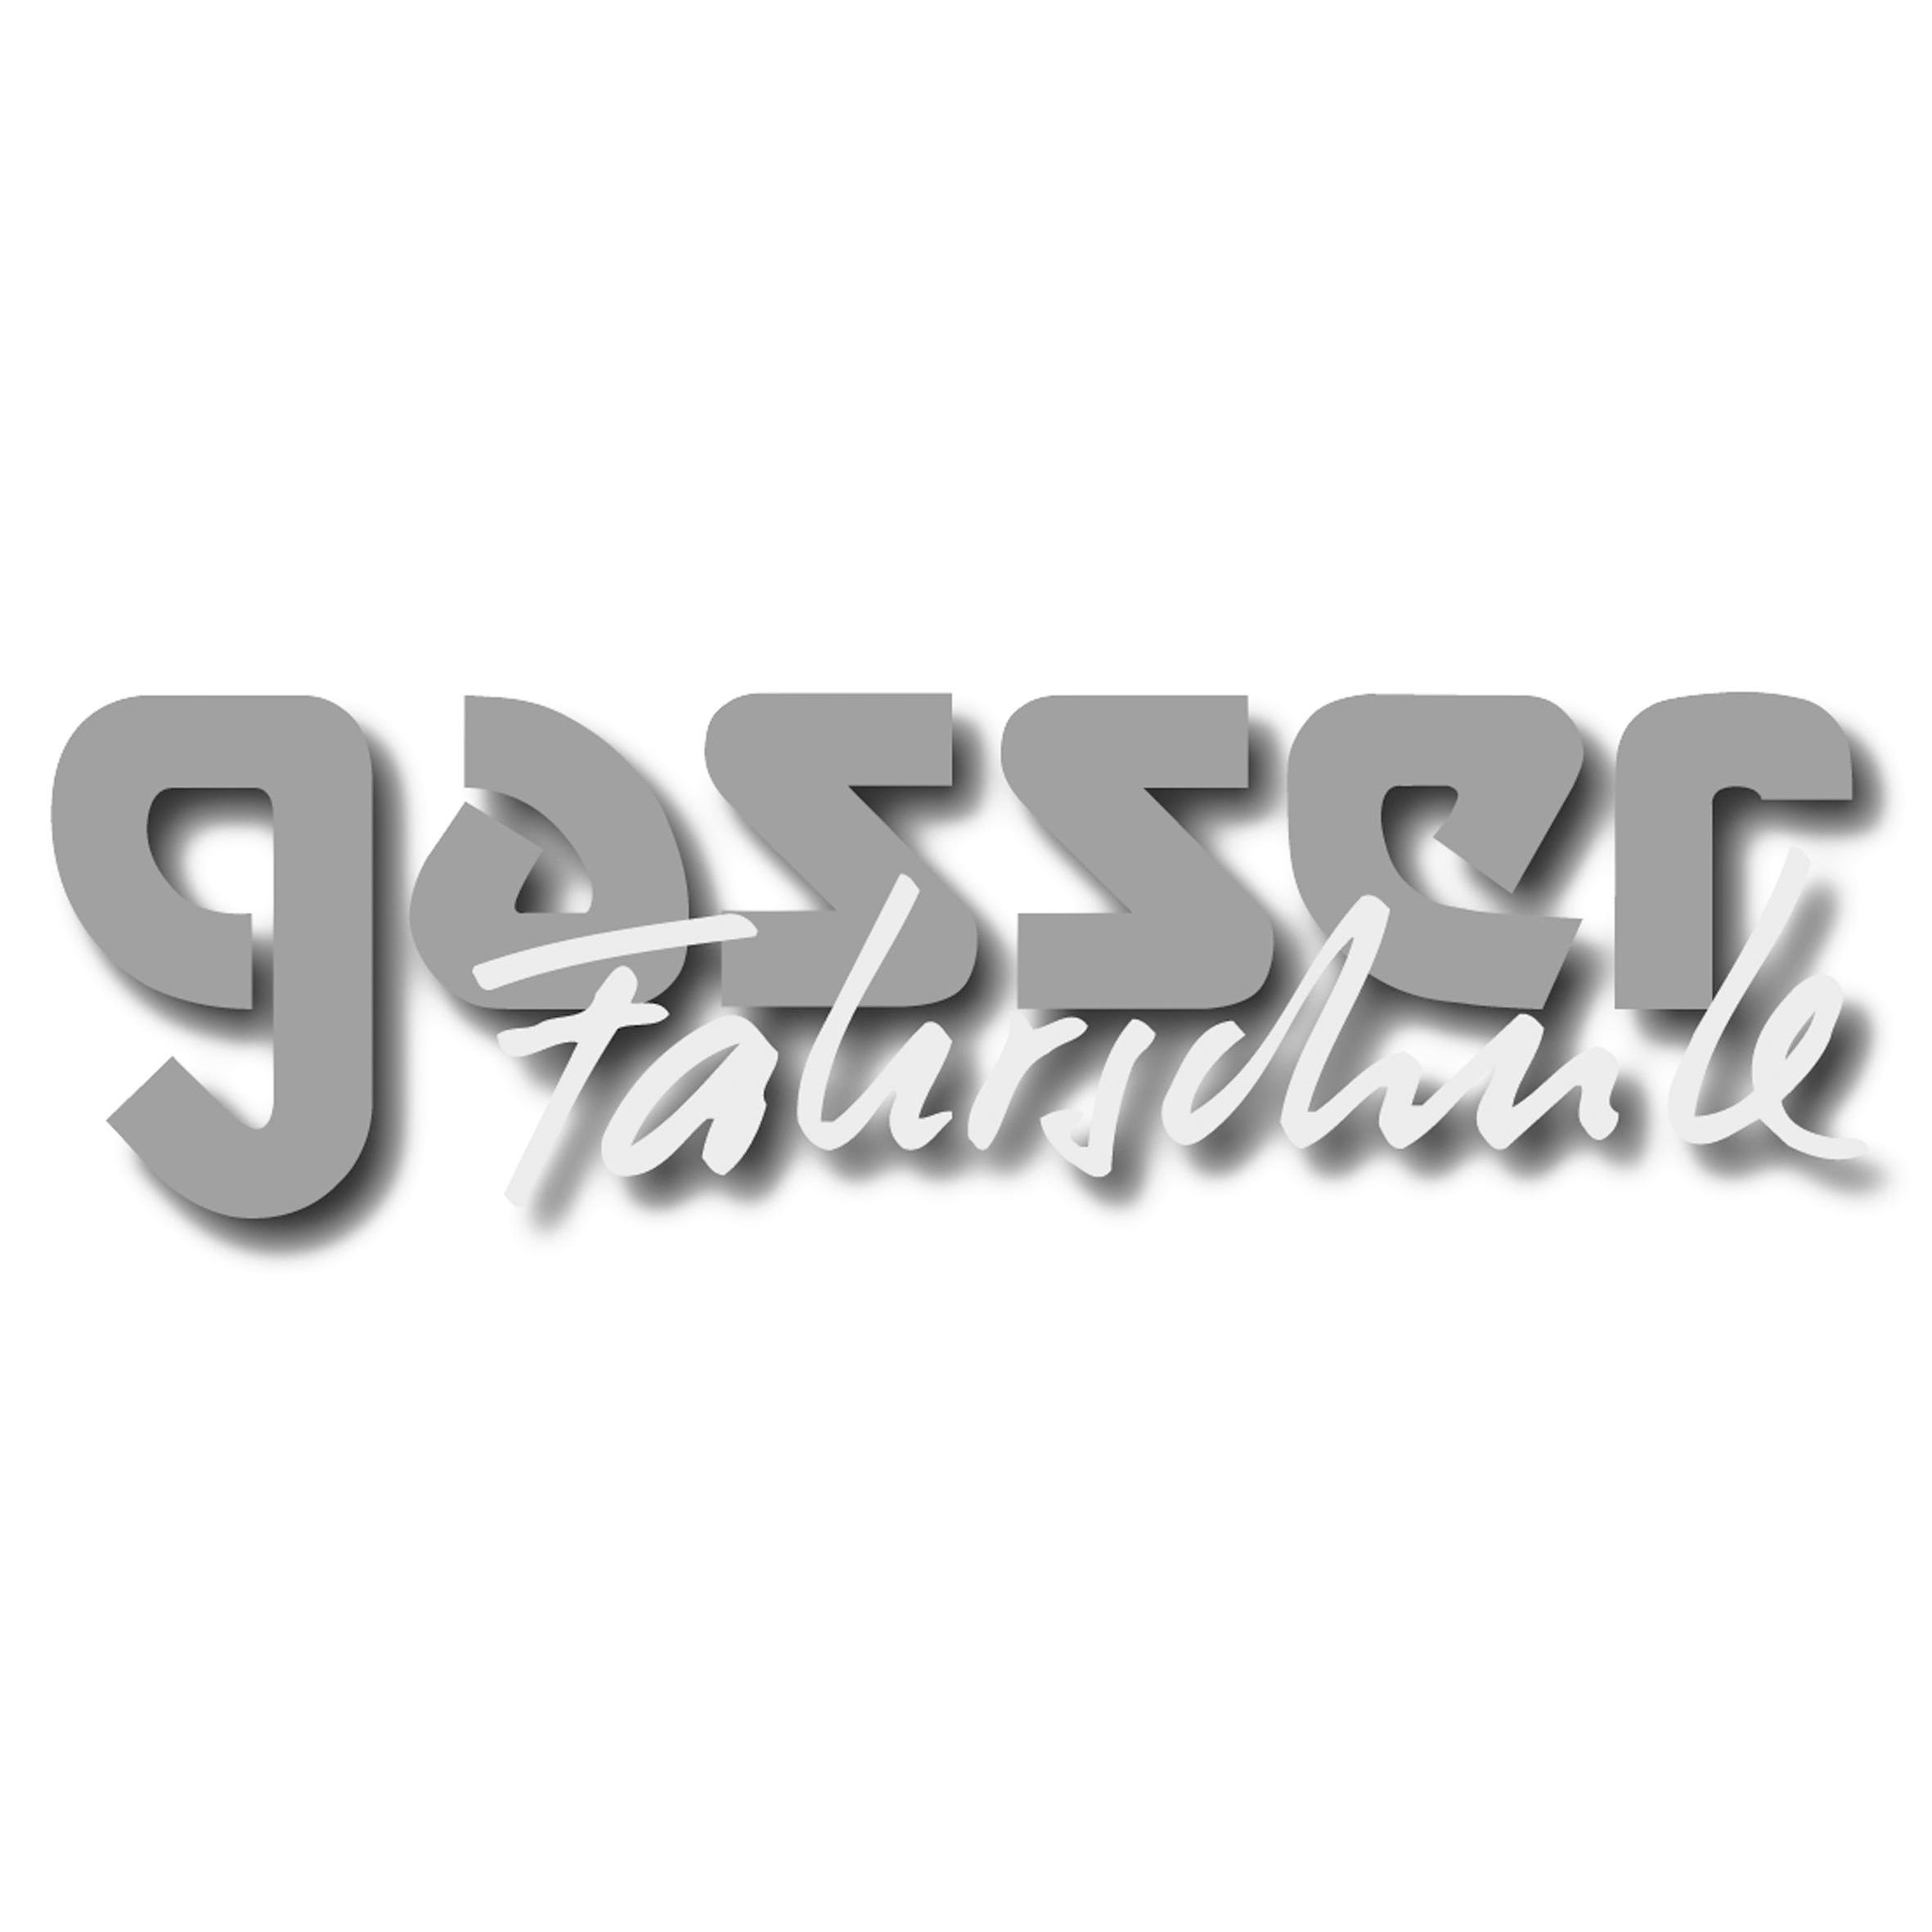 Gasser Fahrschule Logo